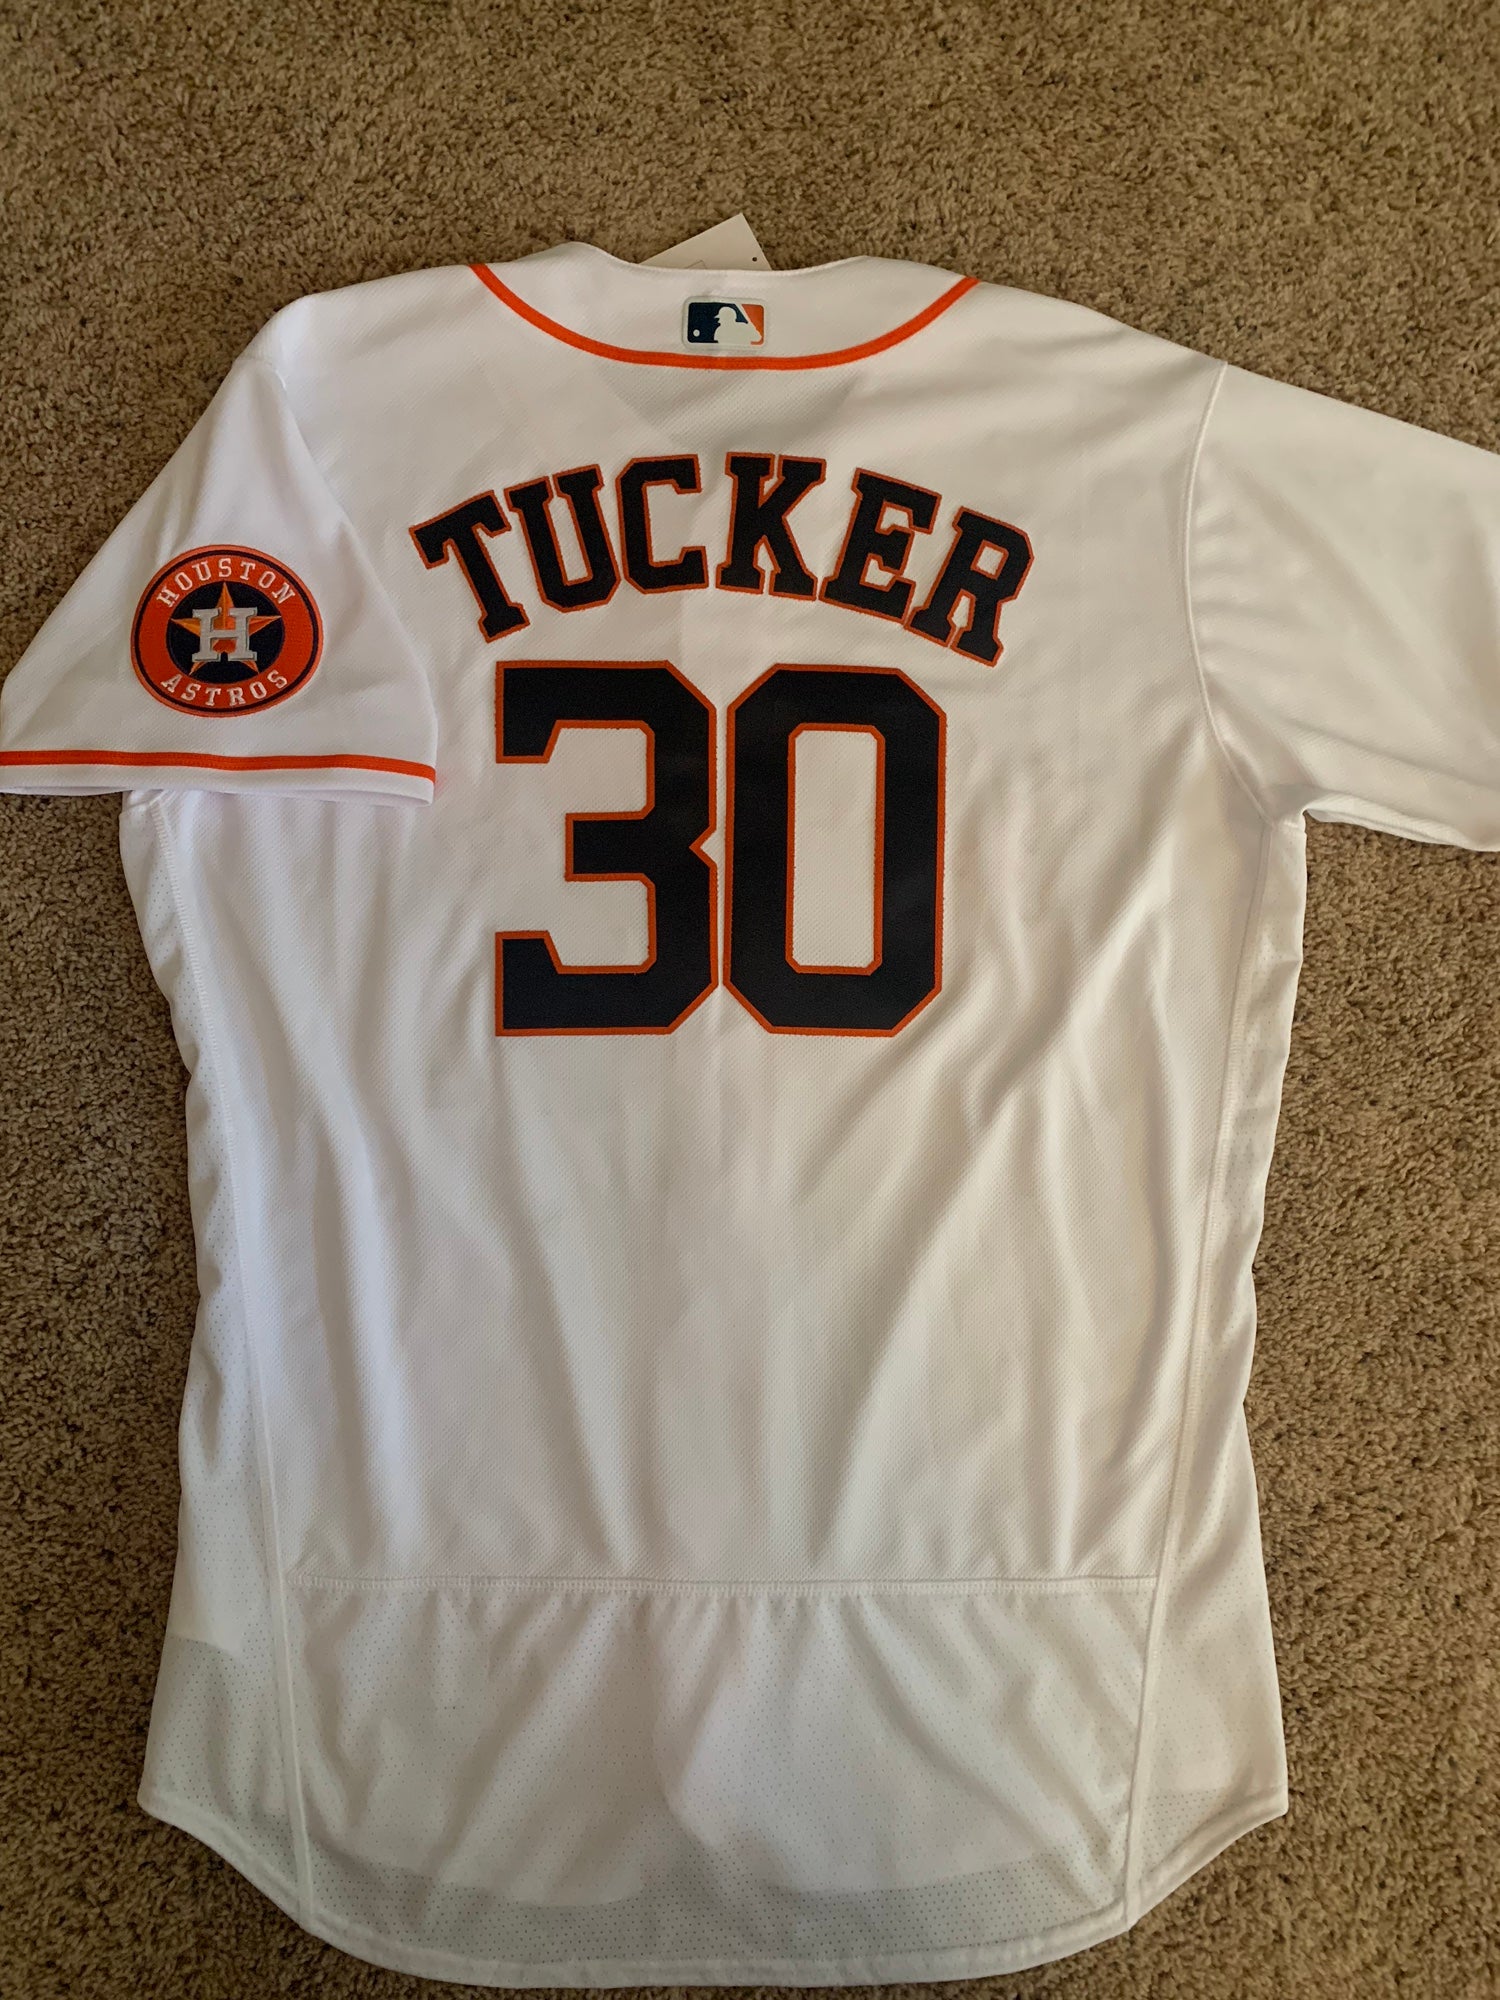 Official Kyle Tucker Jersey, Kyle Tucker Shirts, Baseball Apparel, Kyle  Tucker Gear